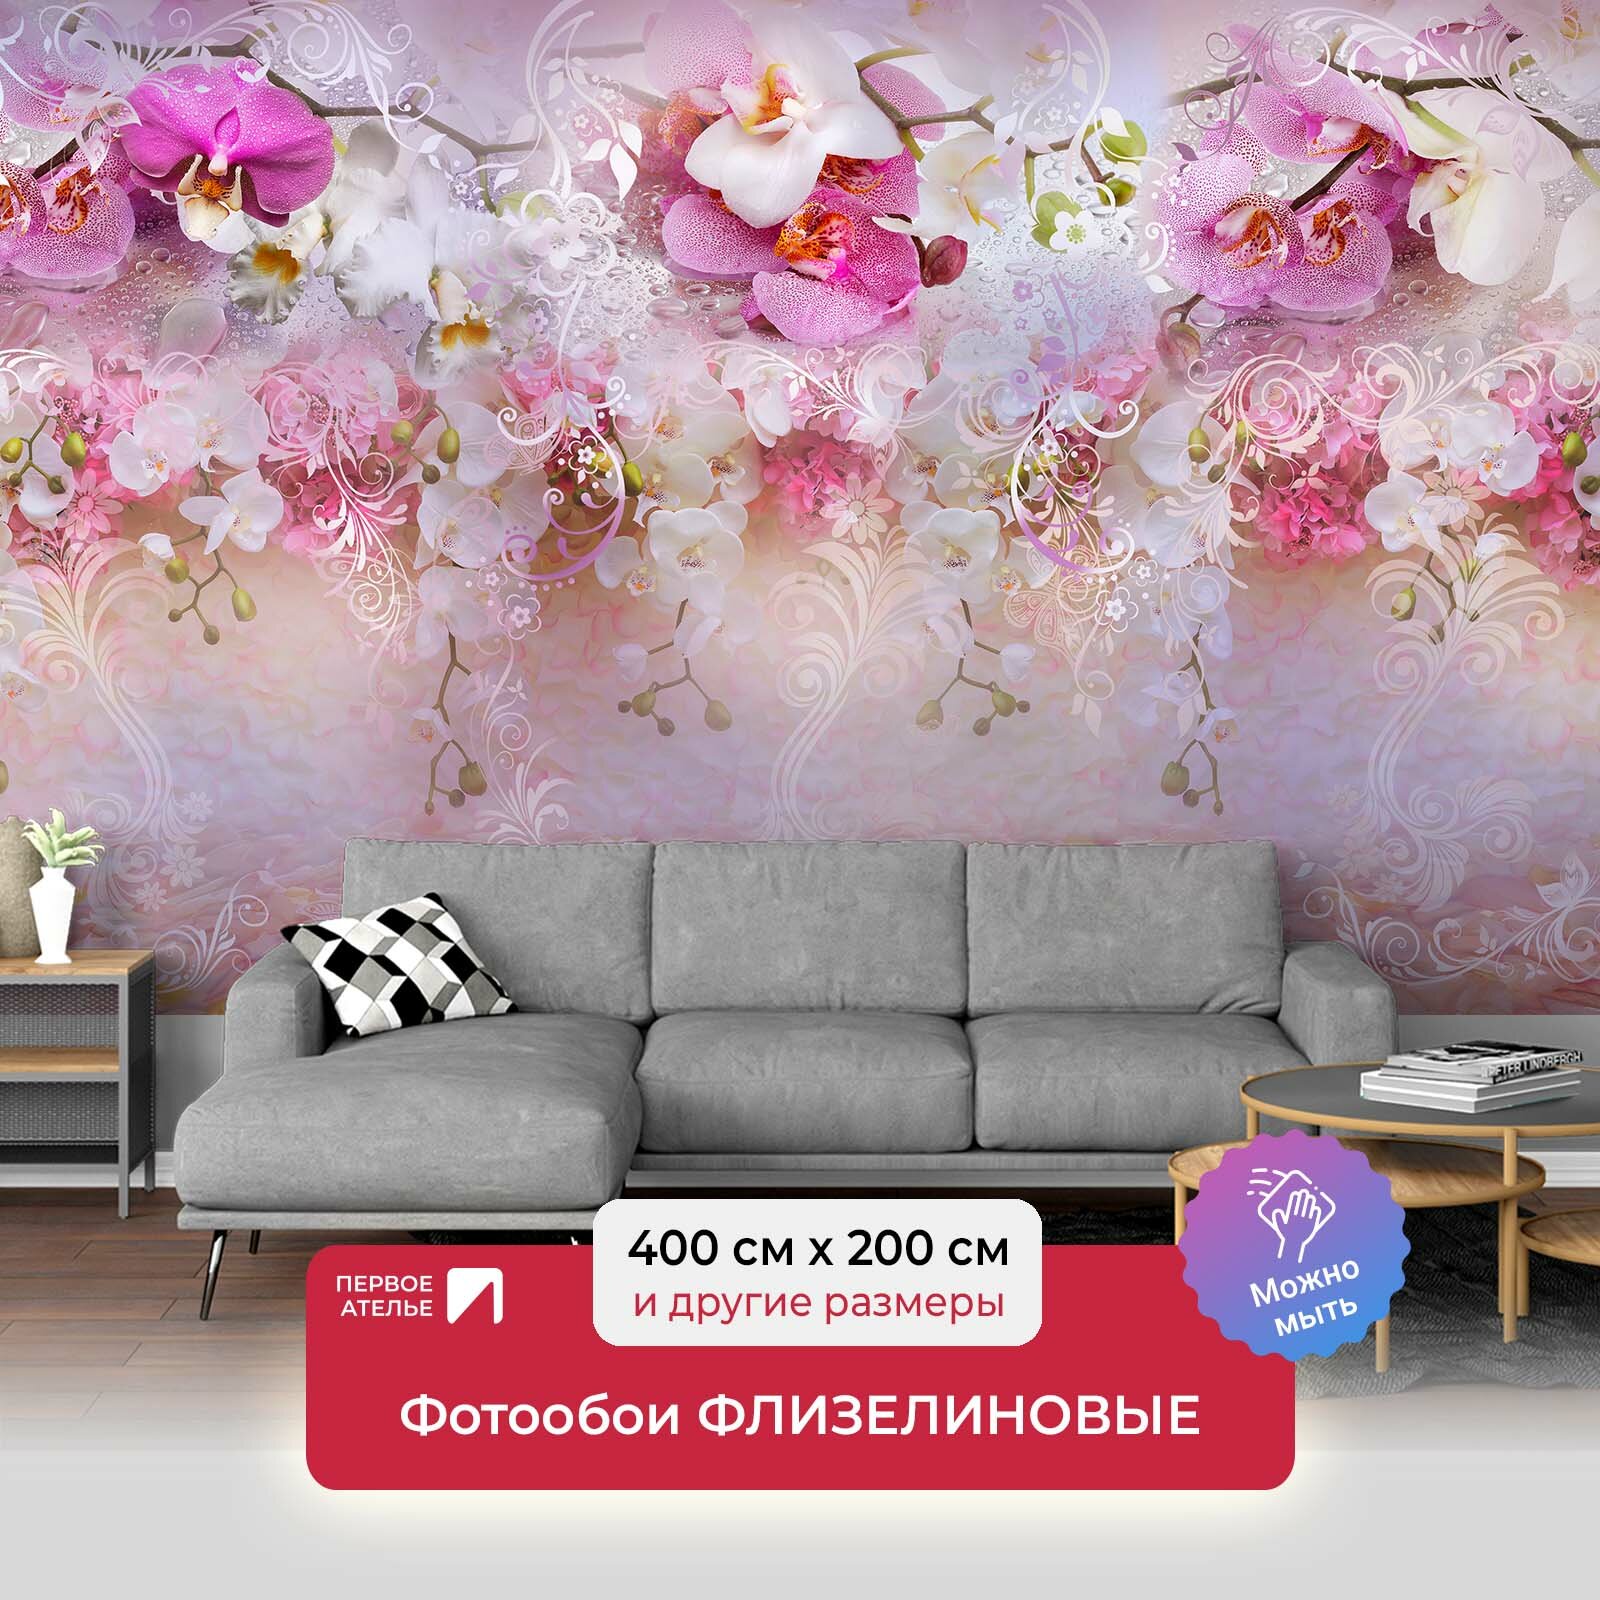 Фотообои на стену первое ателье "Абстракция с орхидеями" 400х200 см (ШхВ), флизелиновые Premium